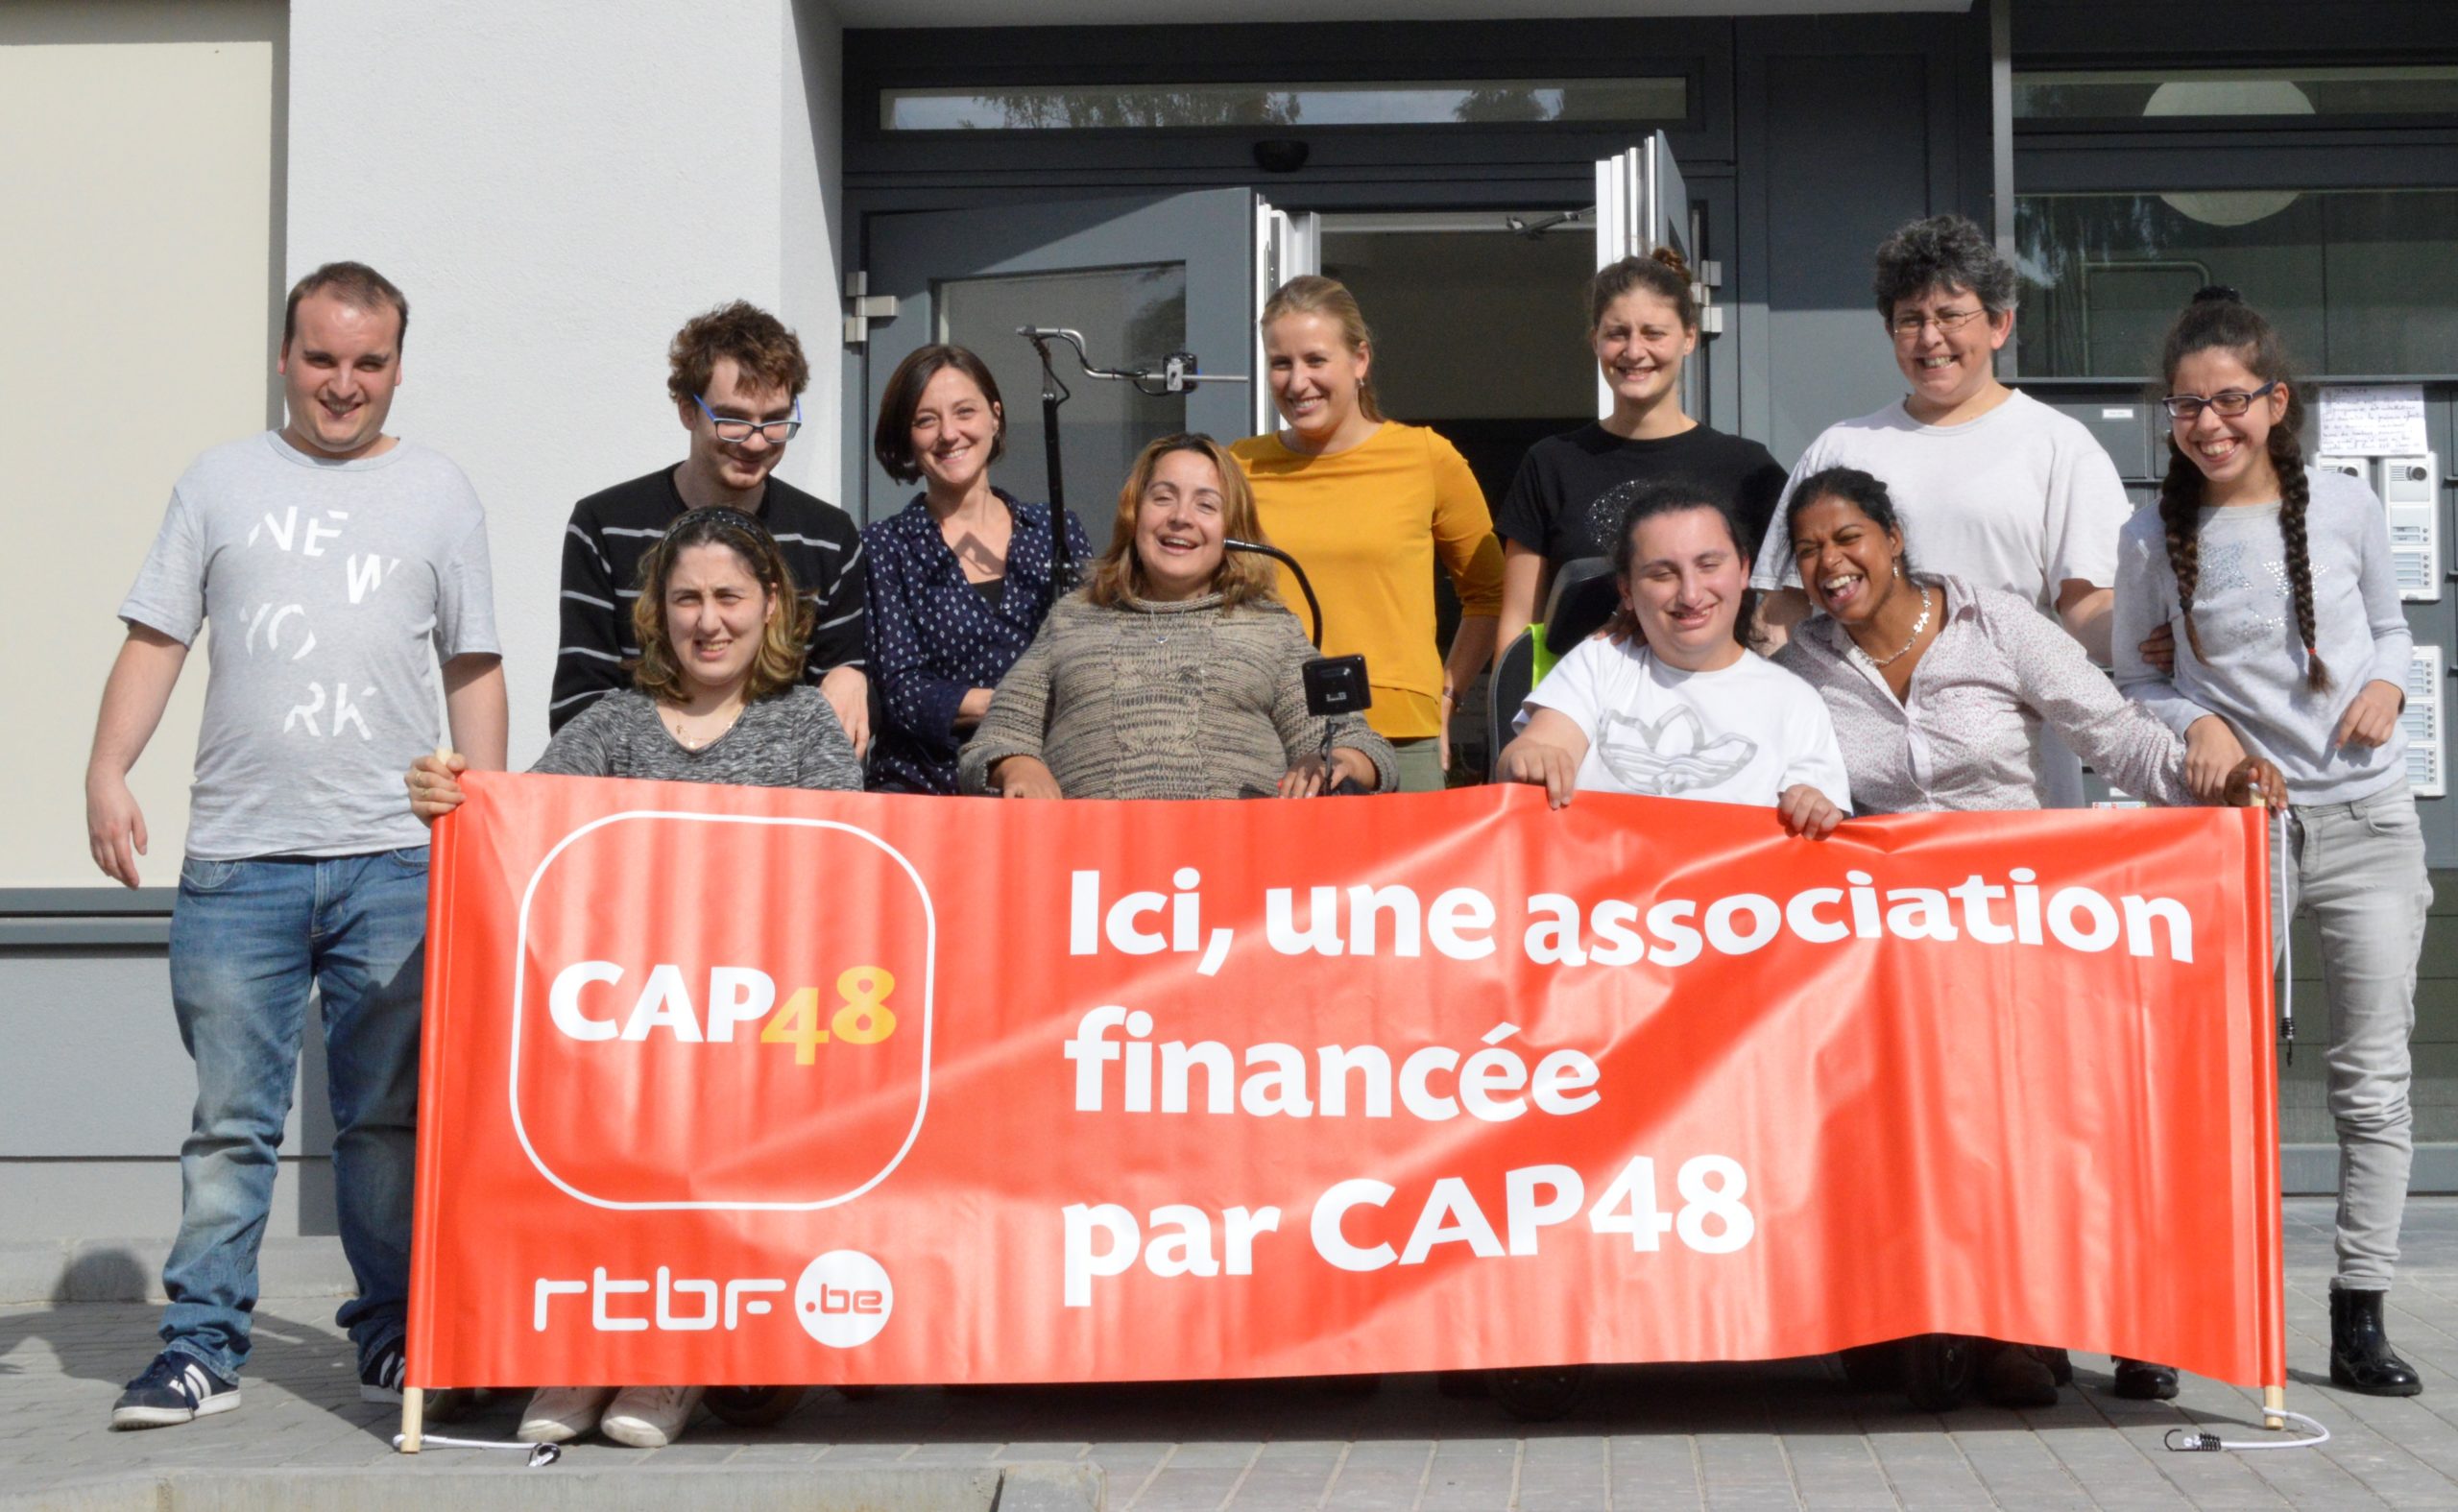 Groupe de bénéficiaires portant une banderole avec comme message : "Ici, une associations financée par CAP48"